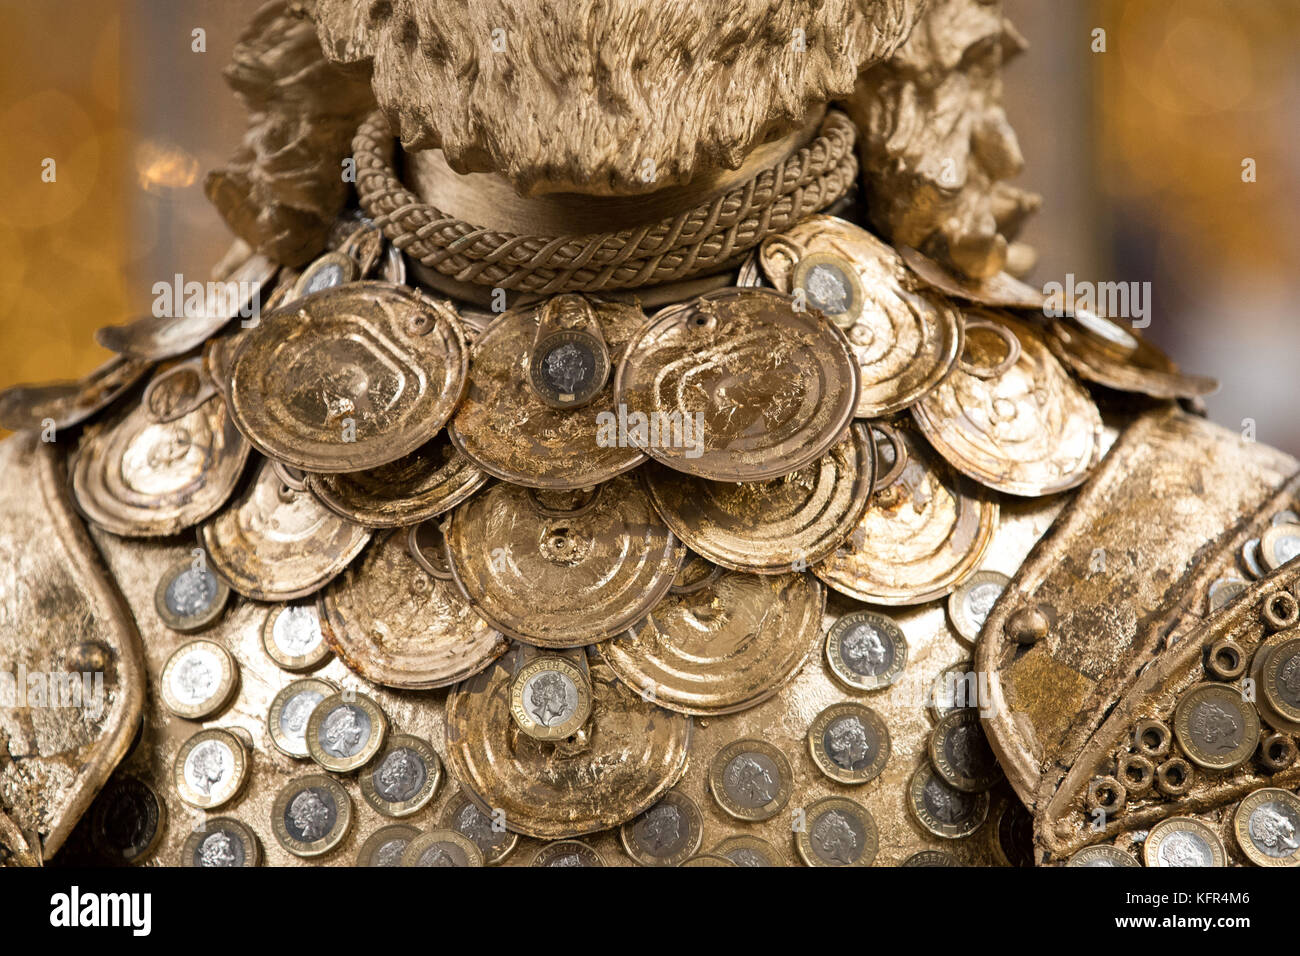 Detail der Kreation der Theaterdesignerin Debbie Rees Deacon, einer King Midas-Statue aus 1-Pfund-Münzen und anderem recyceltem Material, im britischen Eisenwerkzentrum in Oswestry, Shropshire. Stockfoto